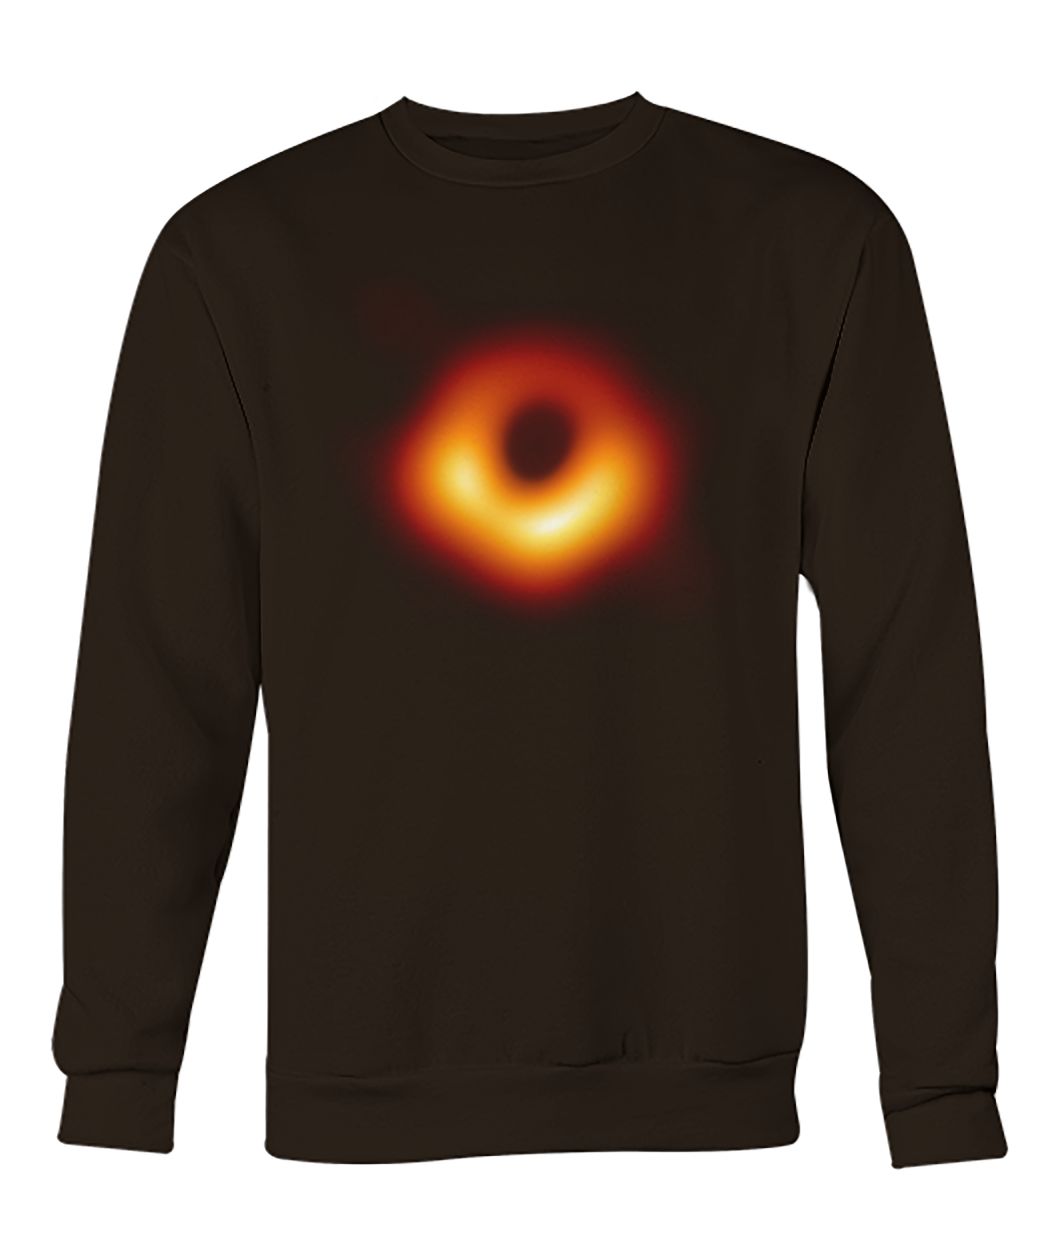 Event horizon telescope black hole 2019 crew neck sweatshirt